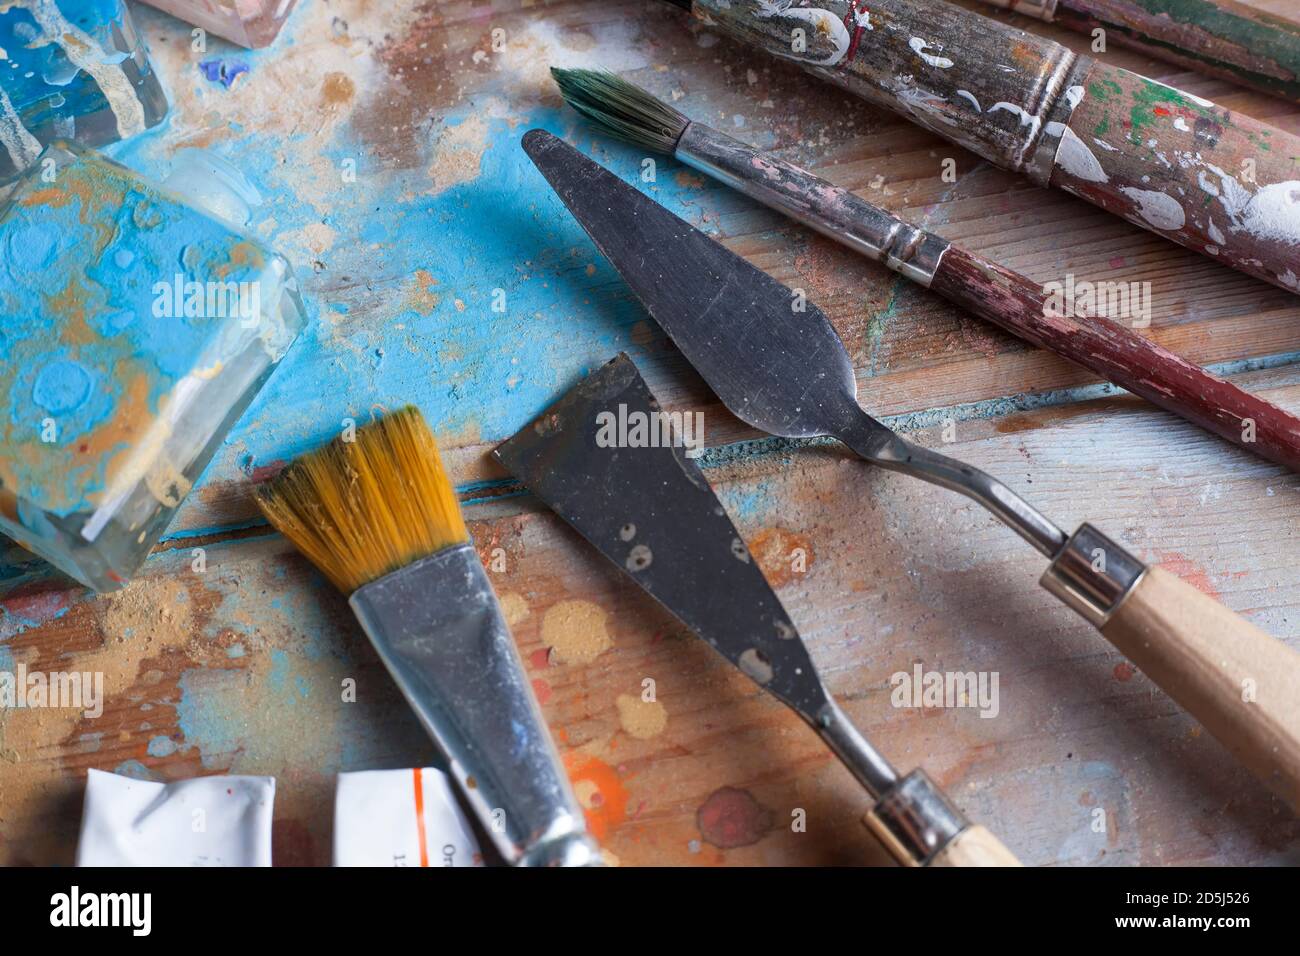 Scrivania artista e materials. Spazzole varie e coltelli pallete. La scrivania in legno è coperta con belle diverse vernici colorate. Foto Stock